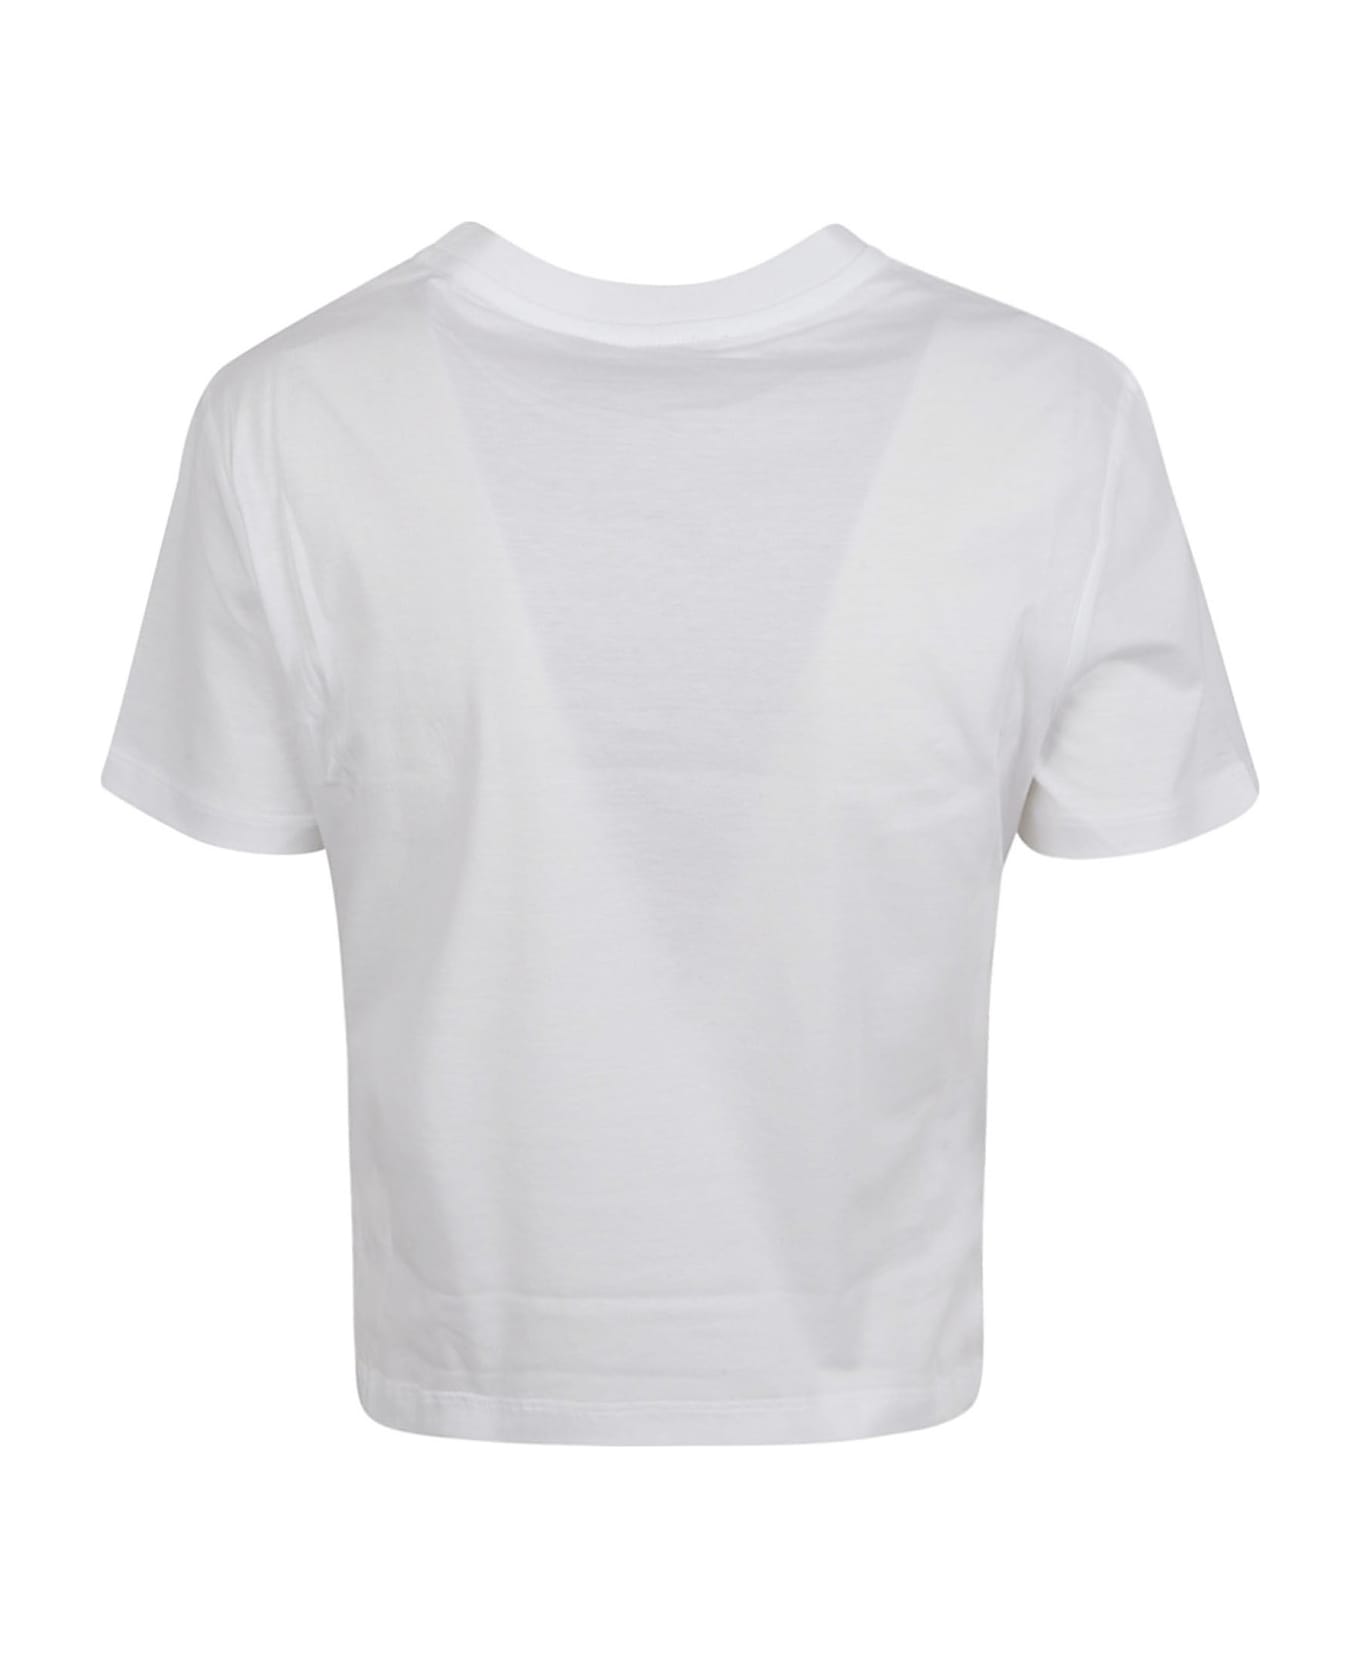 Miu Miu Logo Cropped T-shirt - White